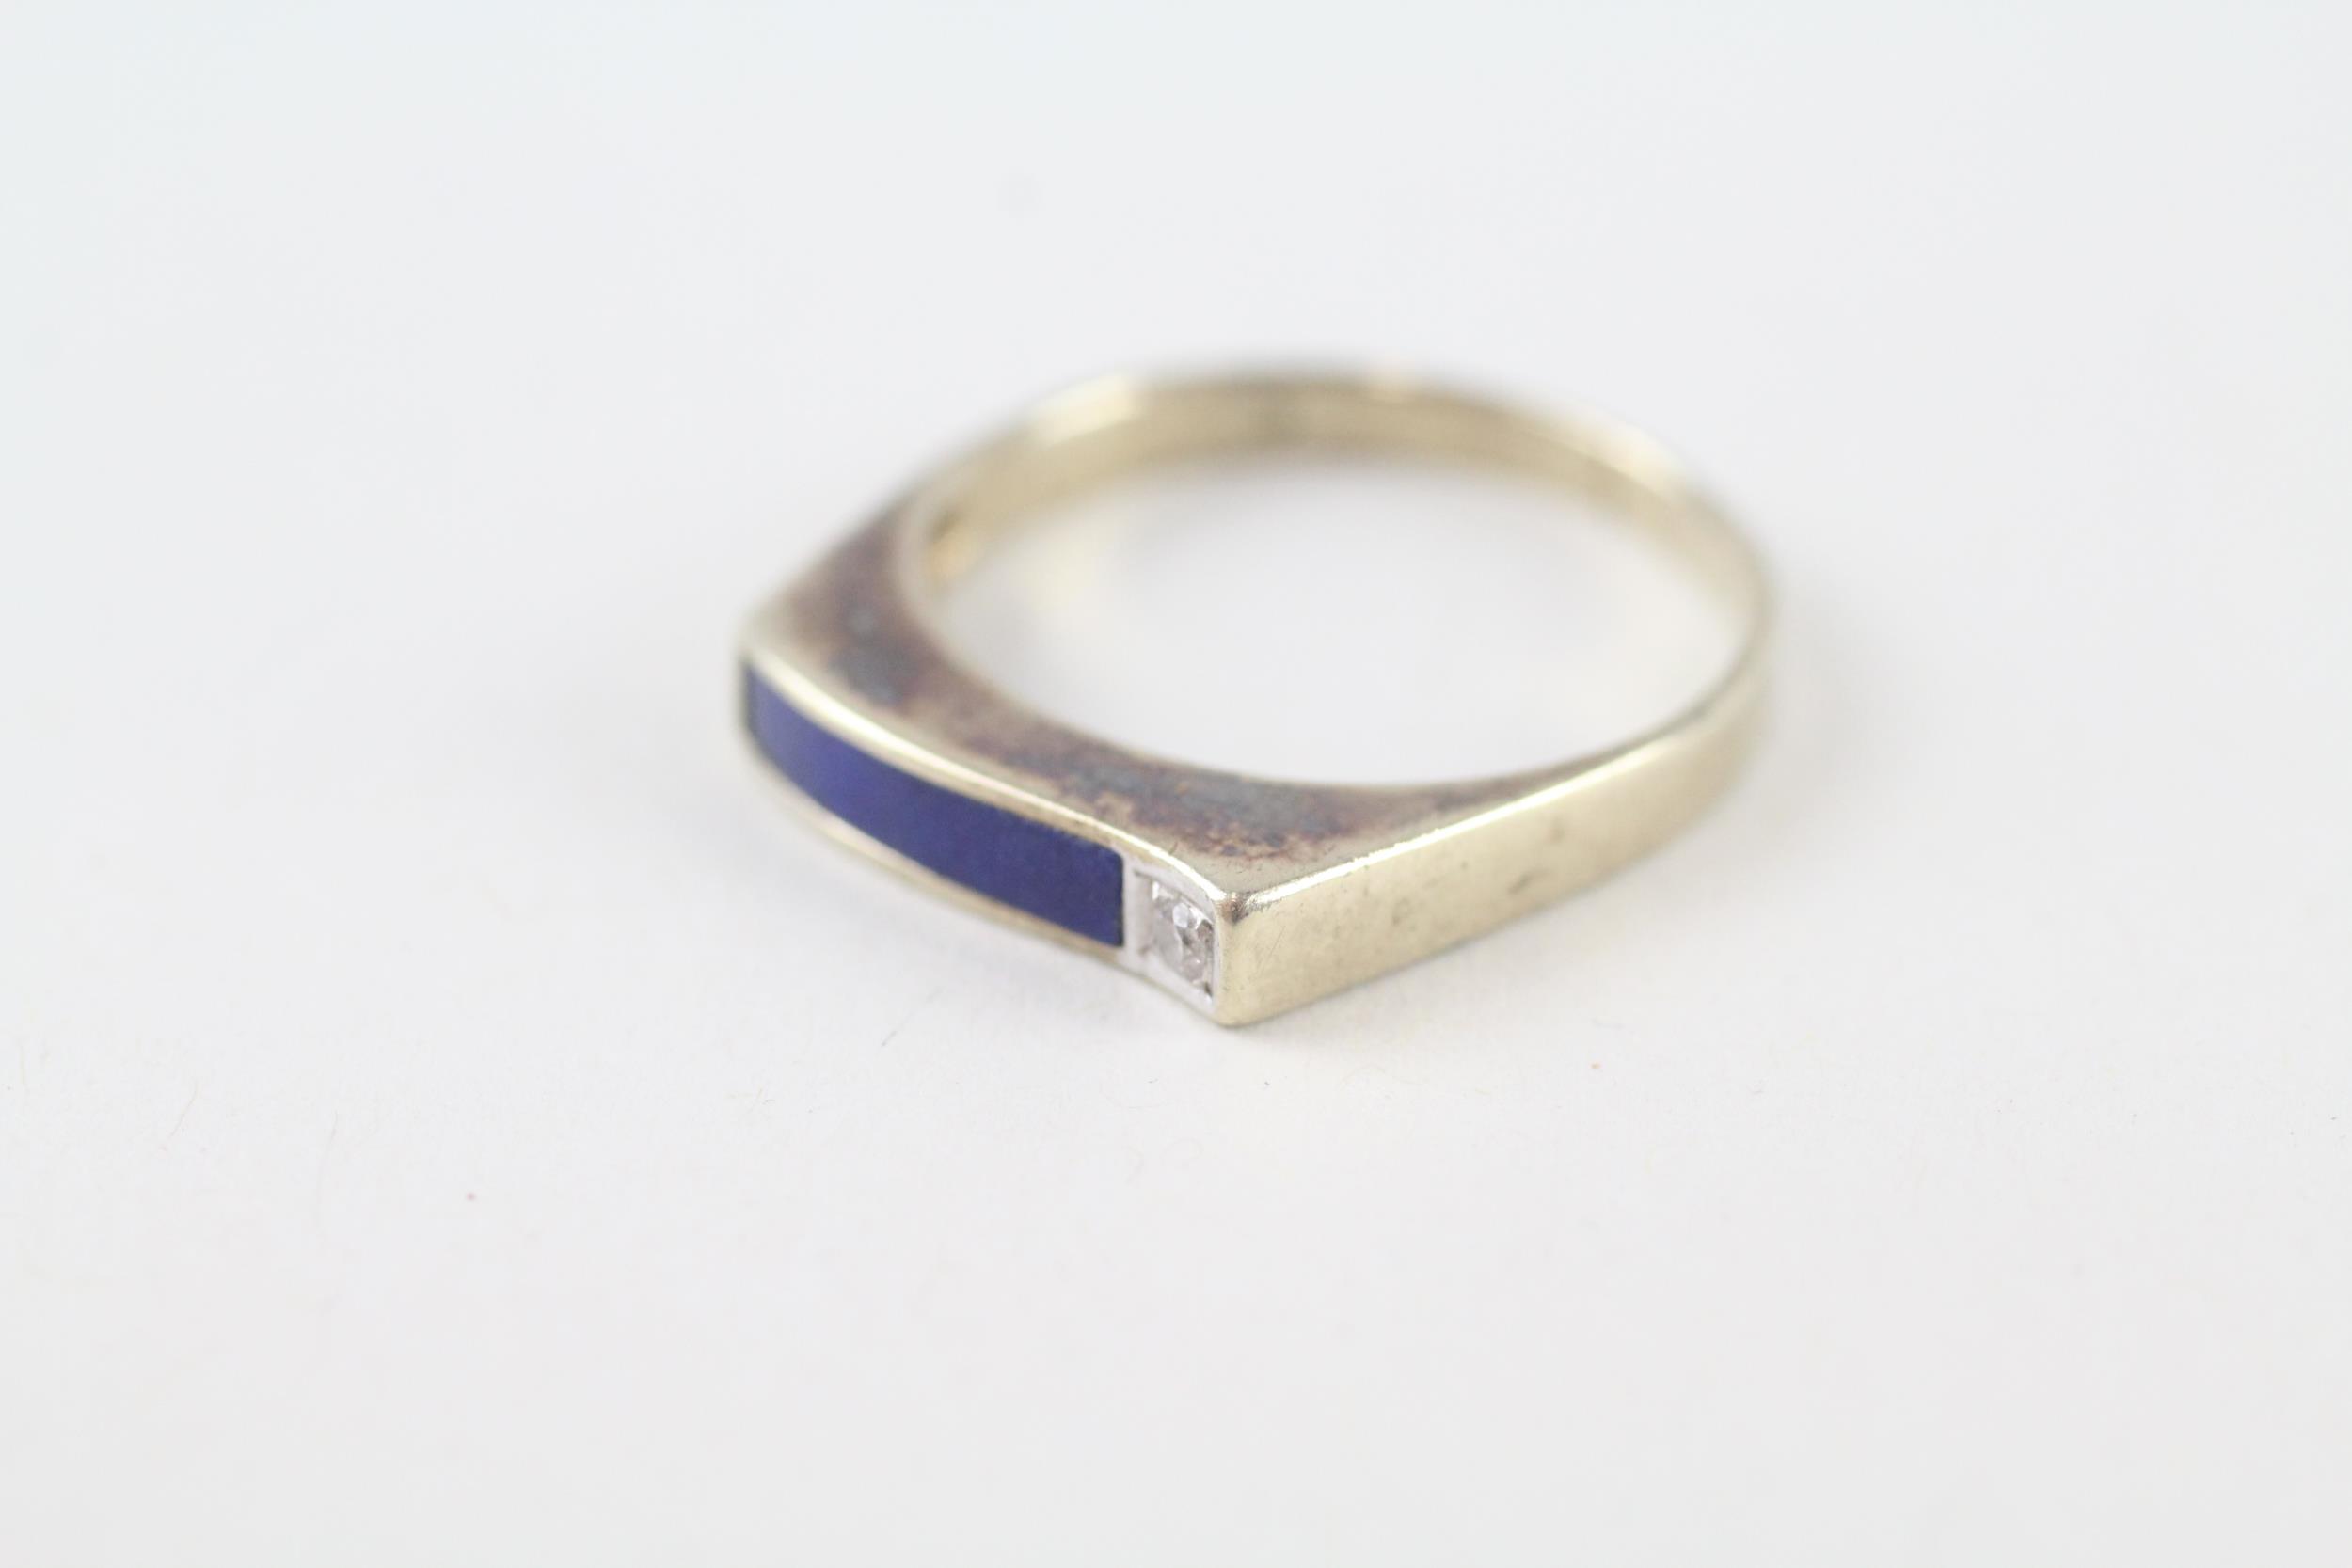 9ct gold vintage lapis lazuli & diamond ring (1.9g) Size M - Image 3 of 4